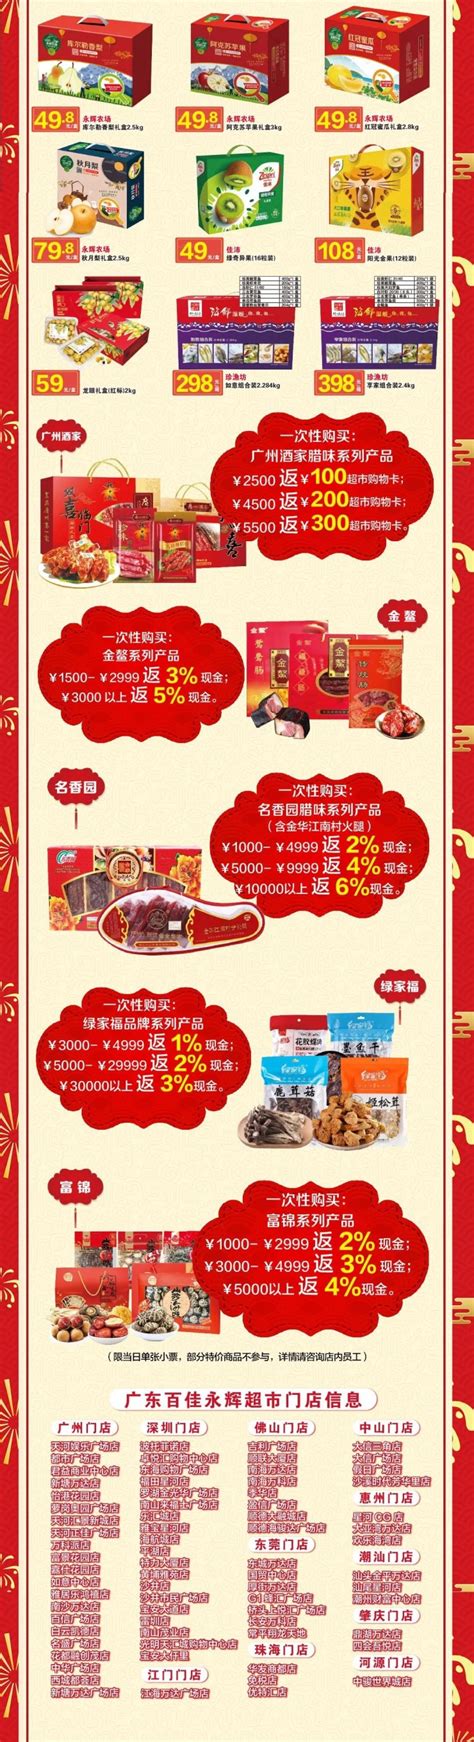 24小时营业超市重出江湖(图)-搜狐新闻